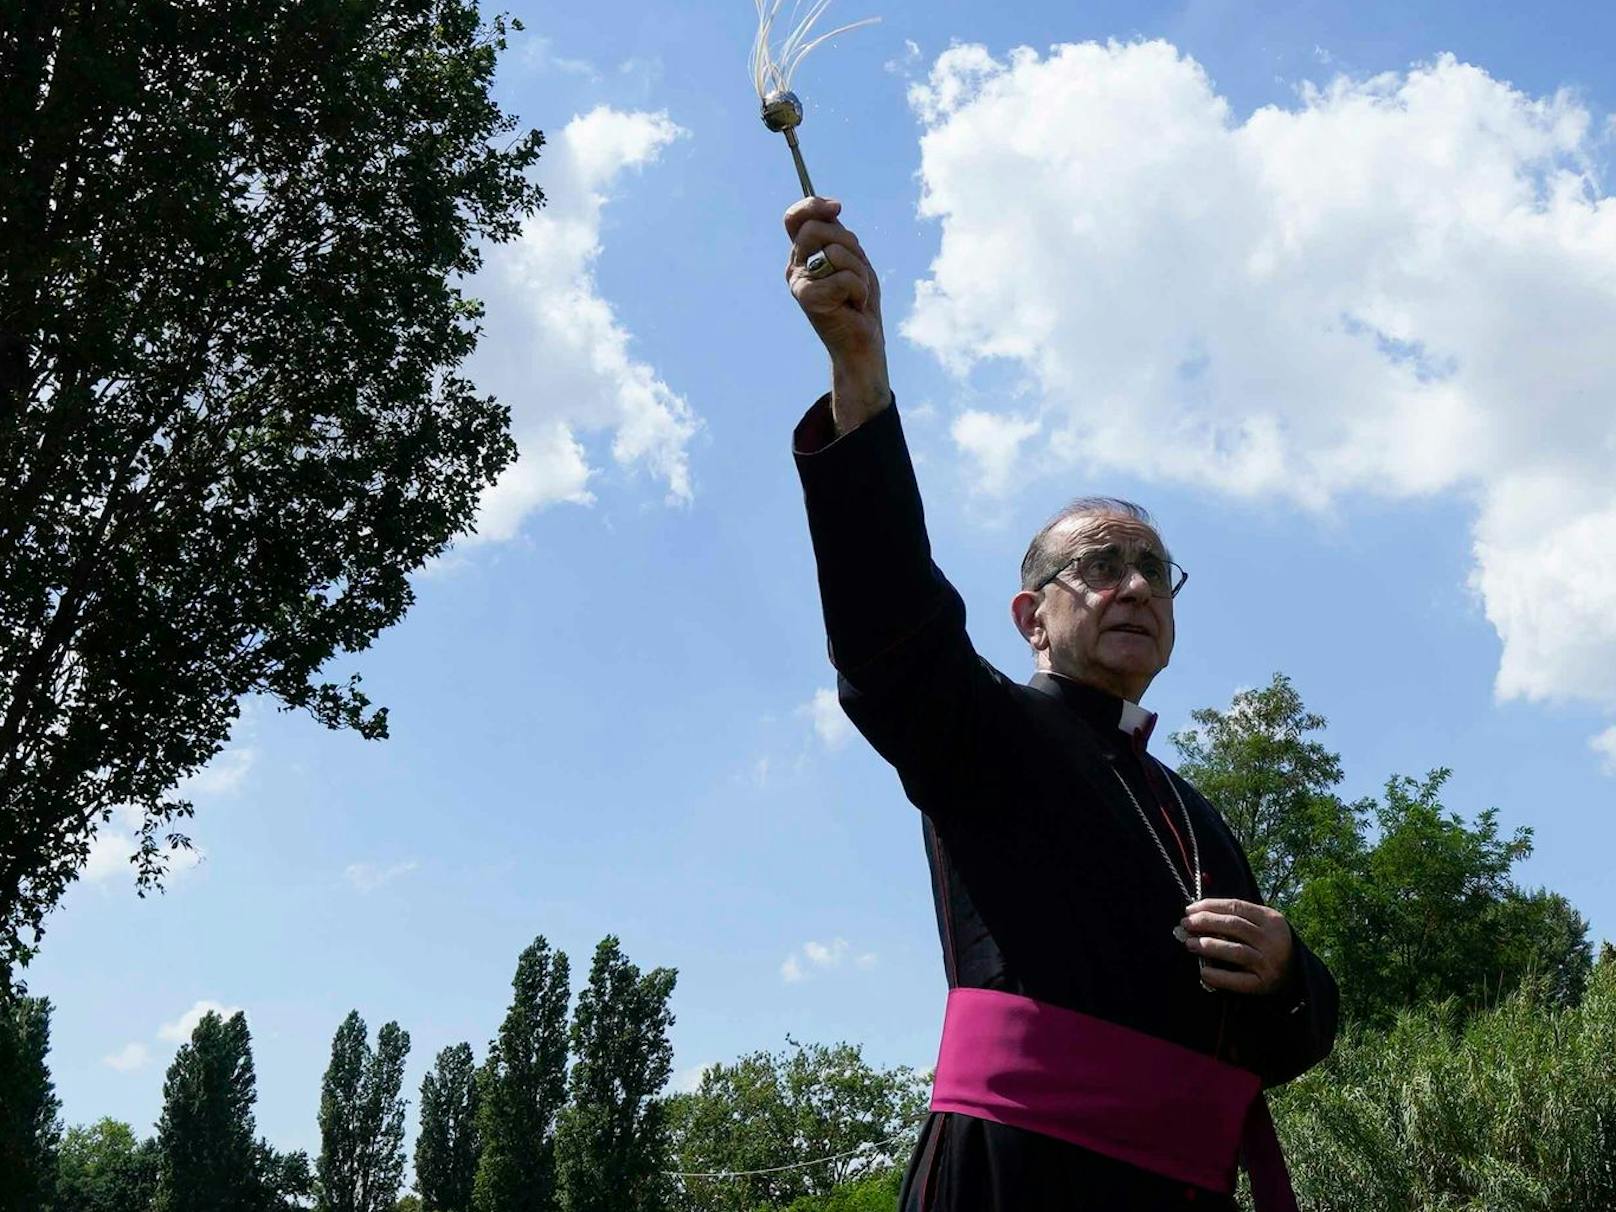 Der Mailänder Erzbischof Mario Delpini bat Gott um ein "Geschenk des Regens".